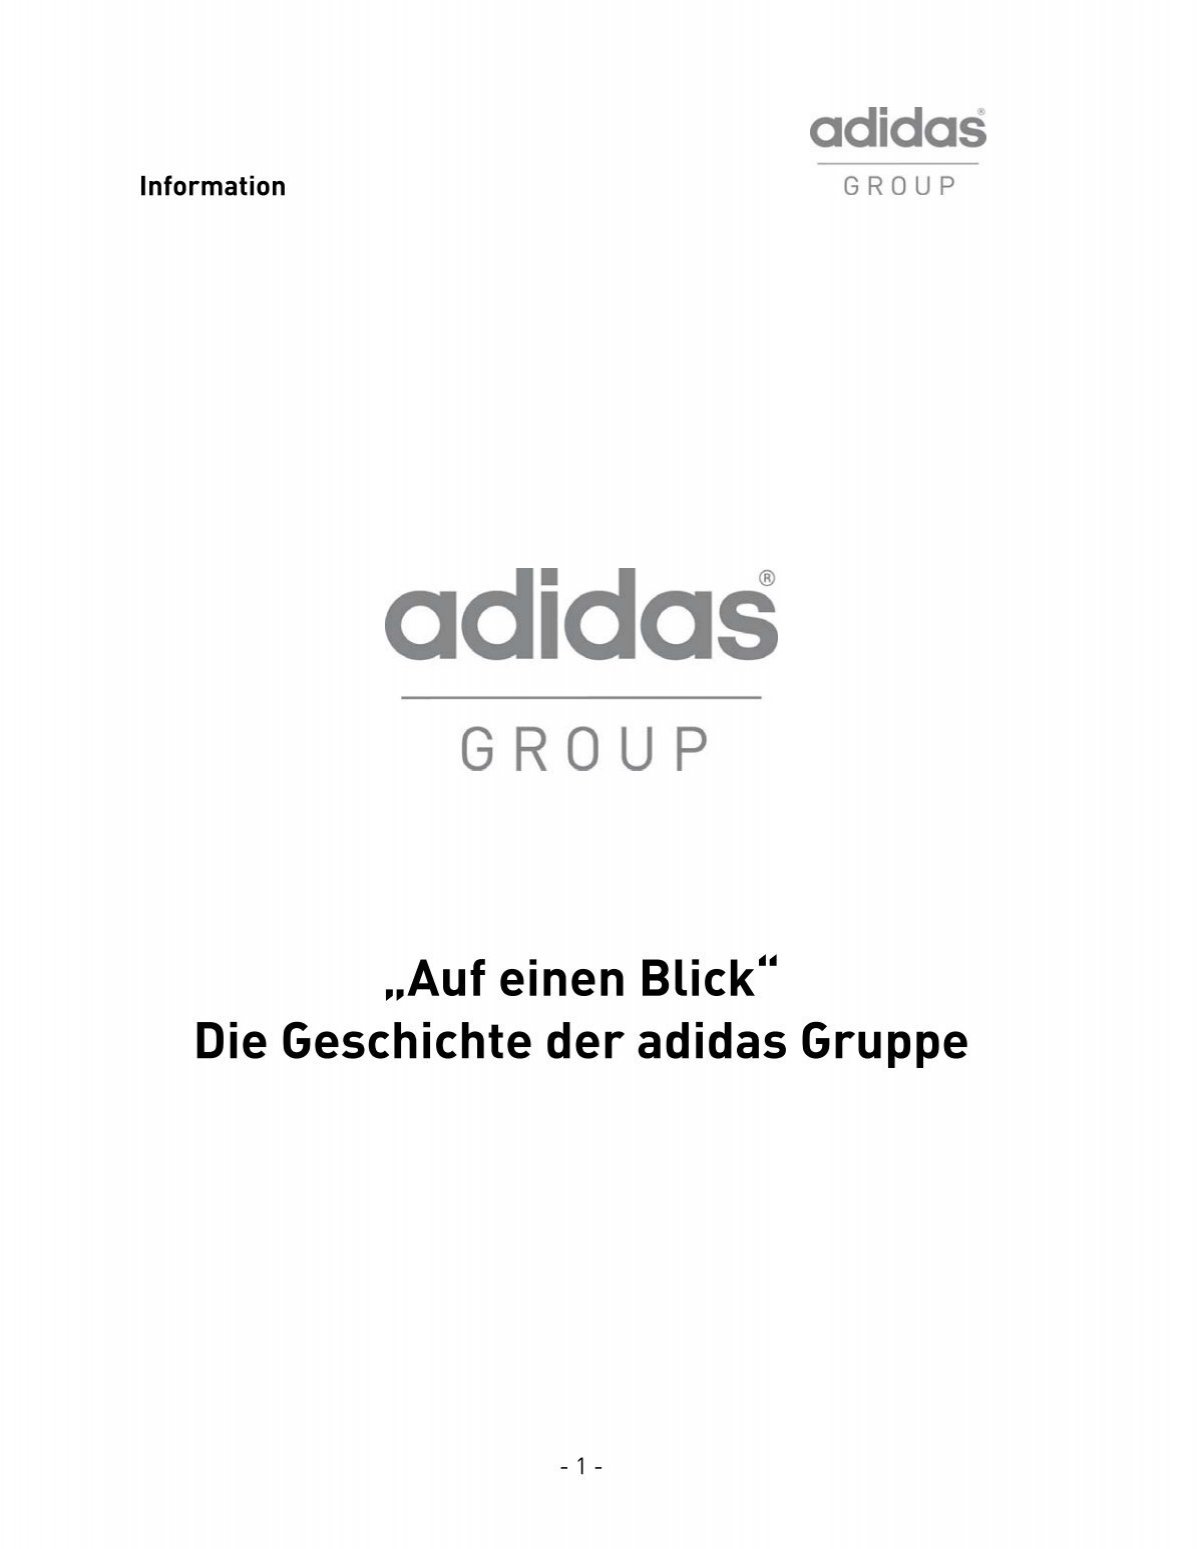 Auf einen Blick“ Die Geschichte der adidas Gruppe - adidas Group